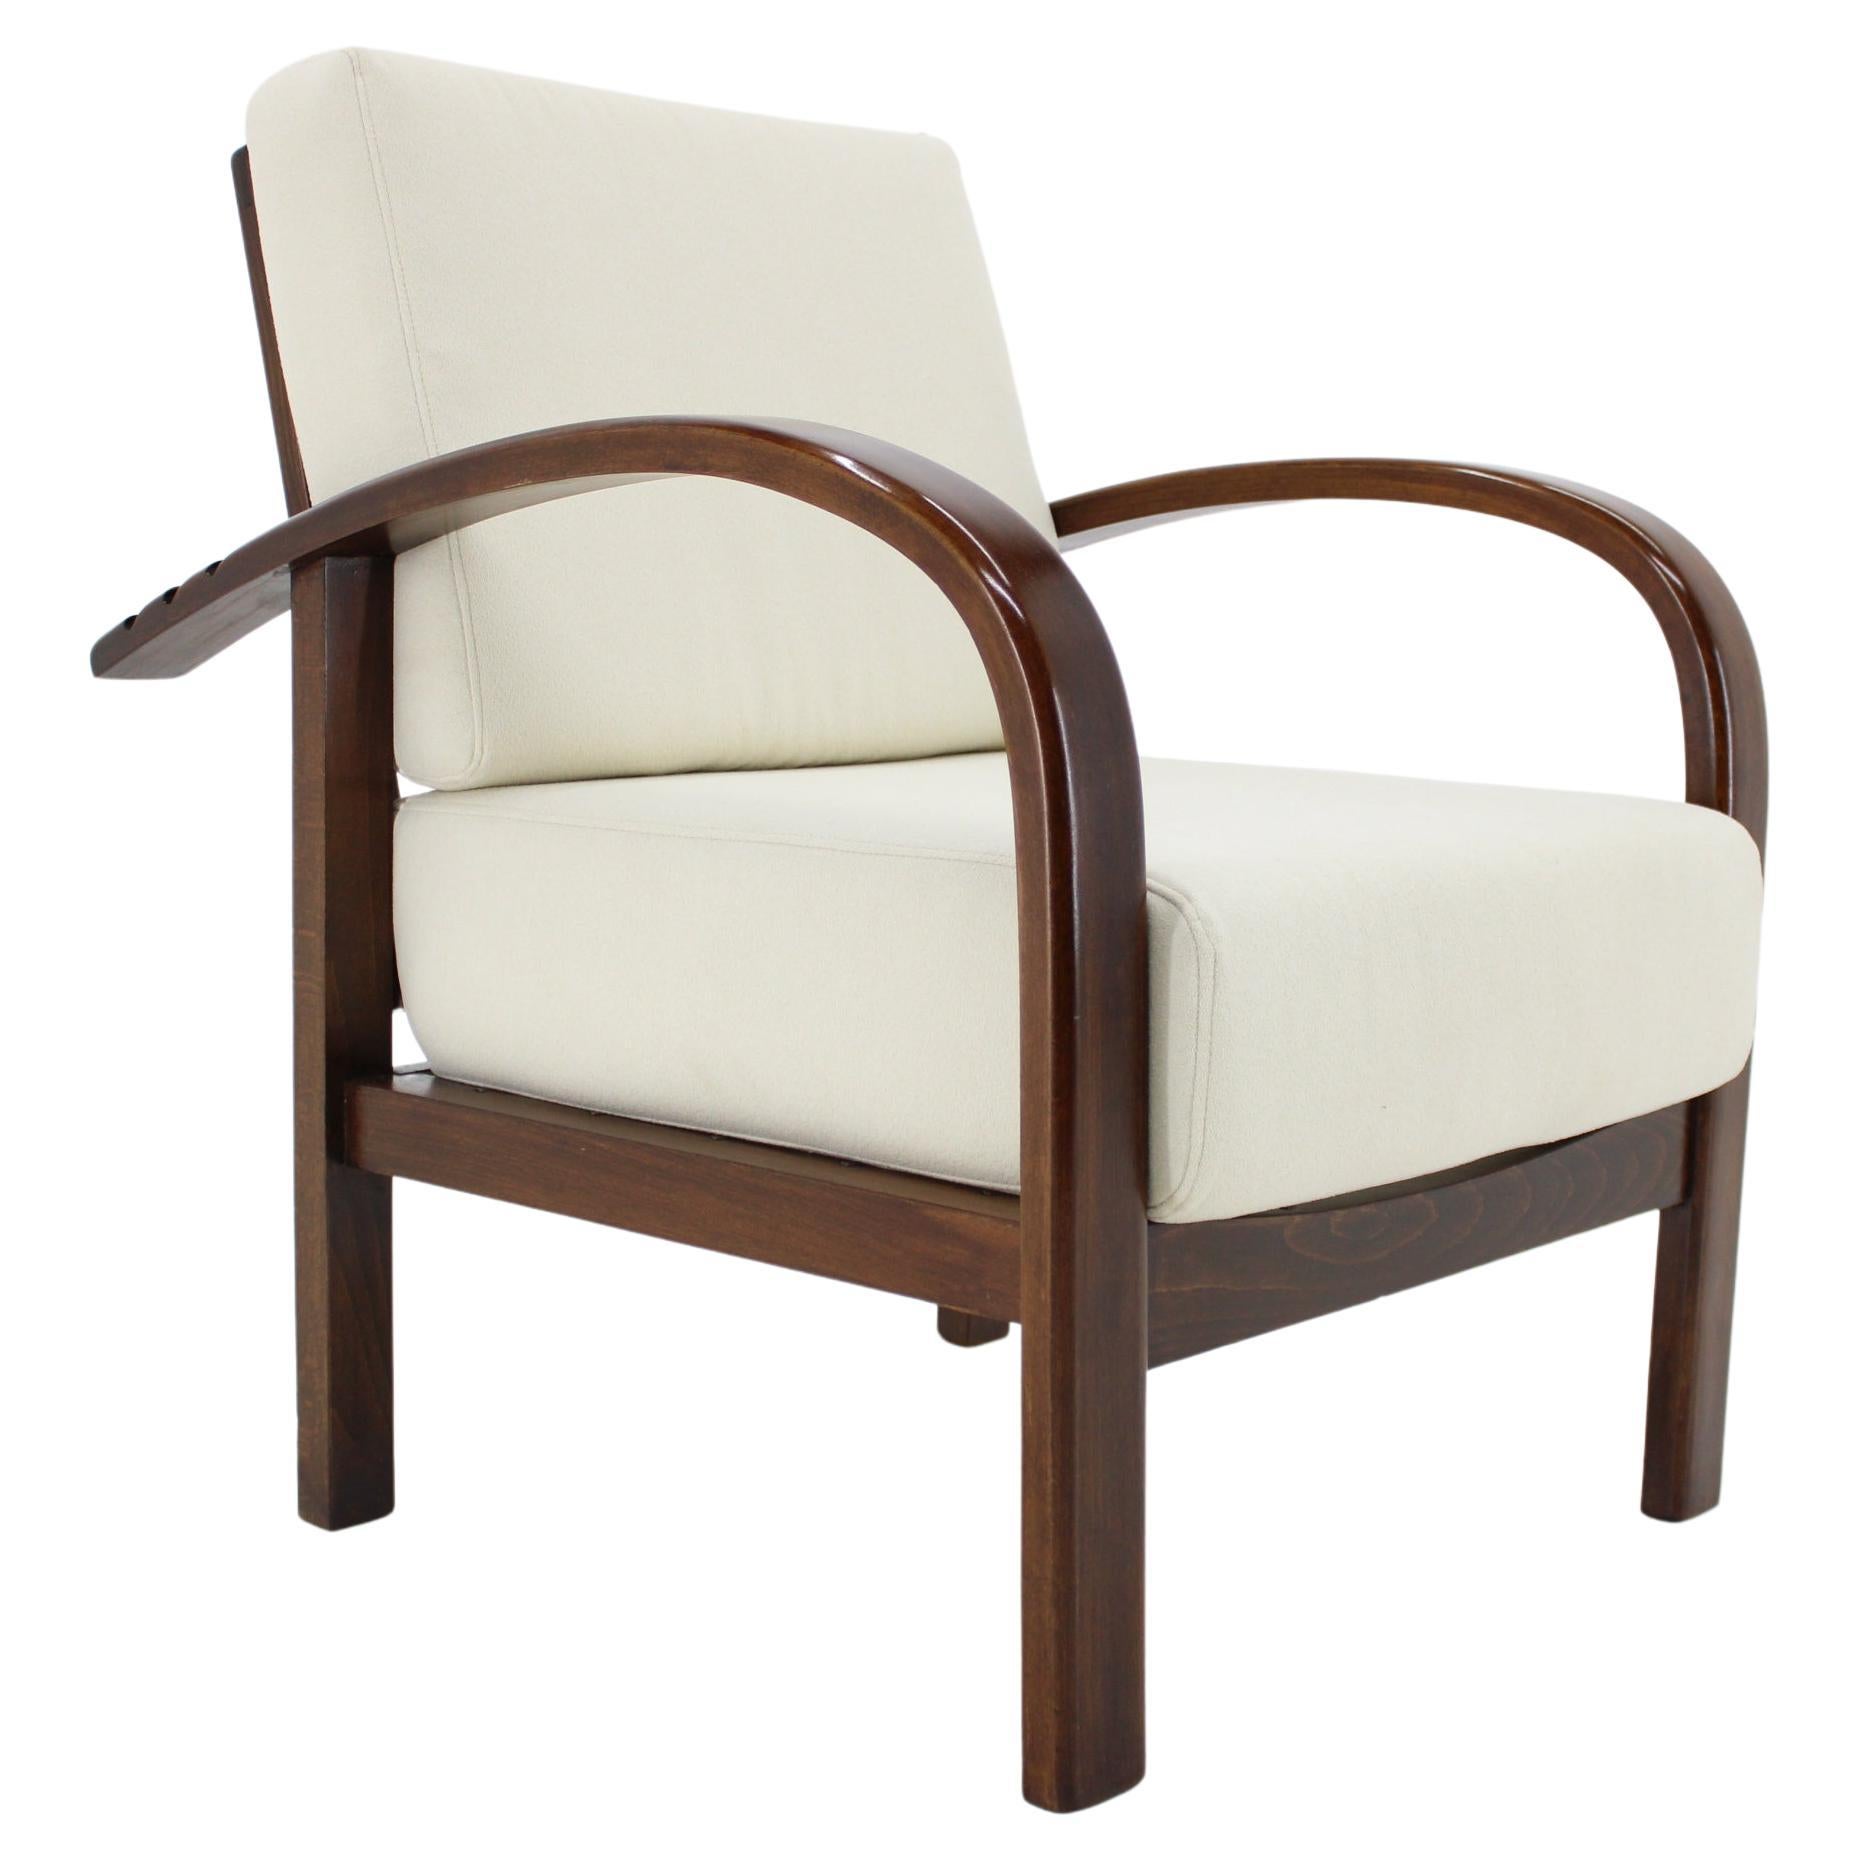 1930s Restored Art Deco Adjustable Armchair by Fischel, Czechoslovakia For Sale